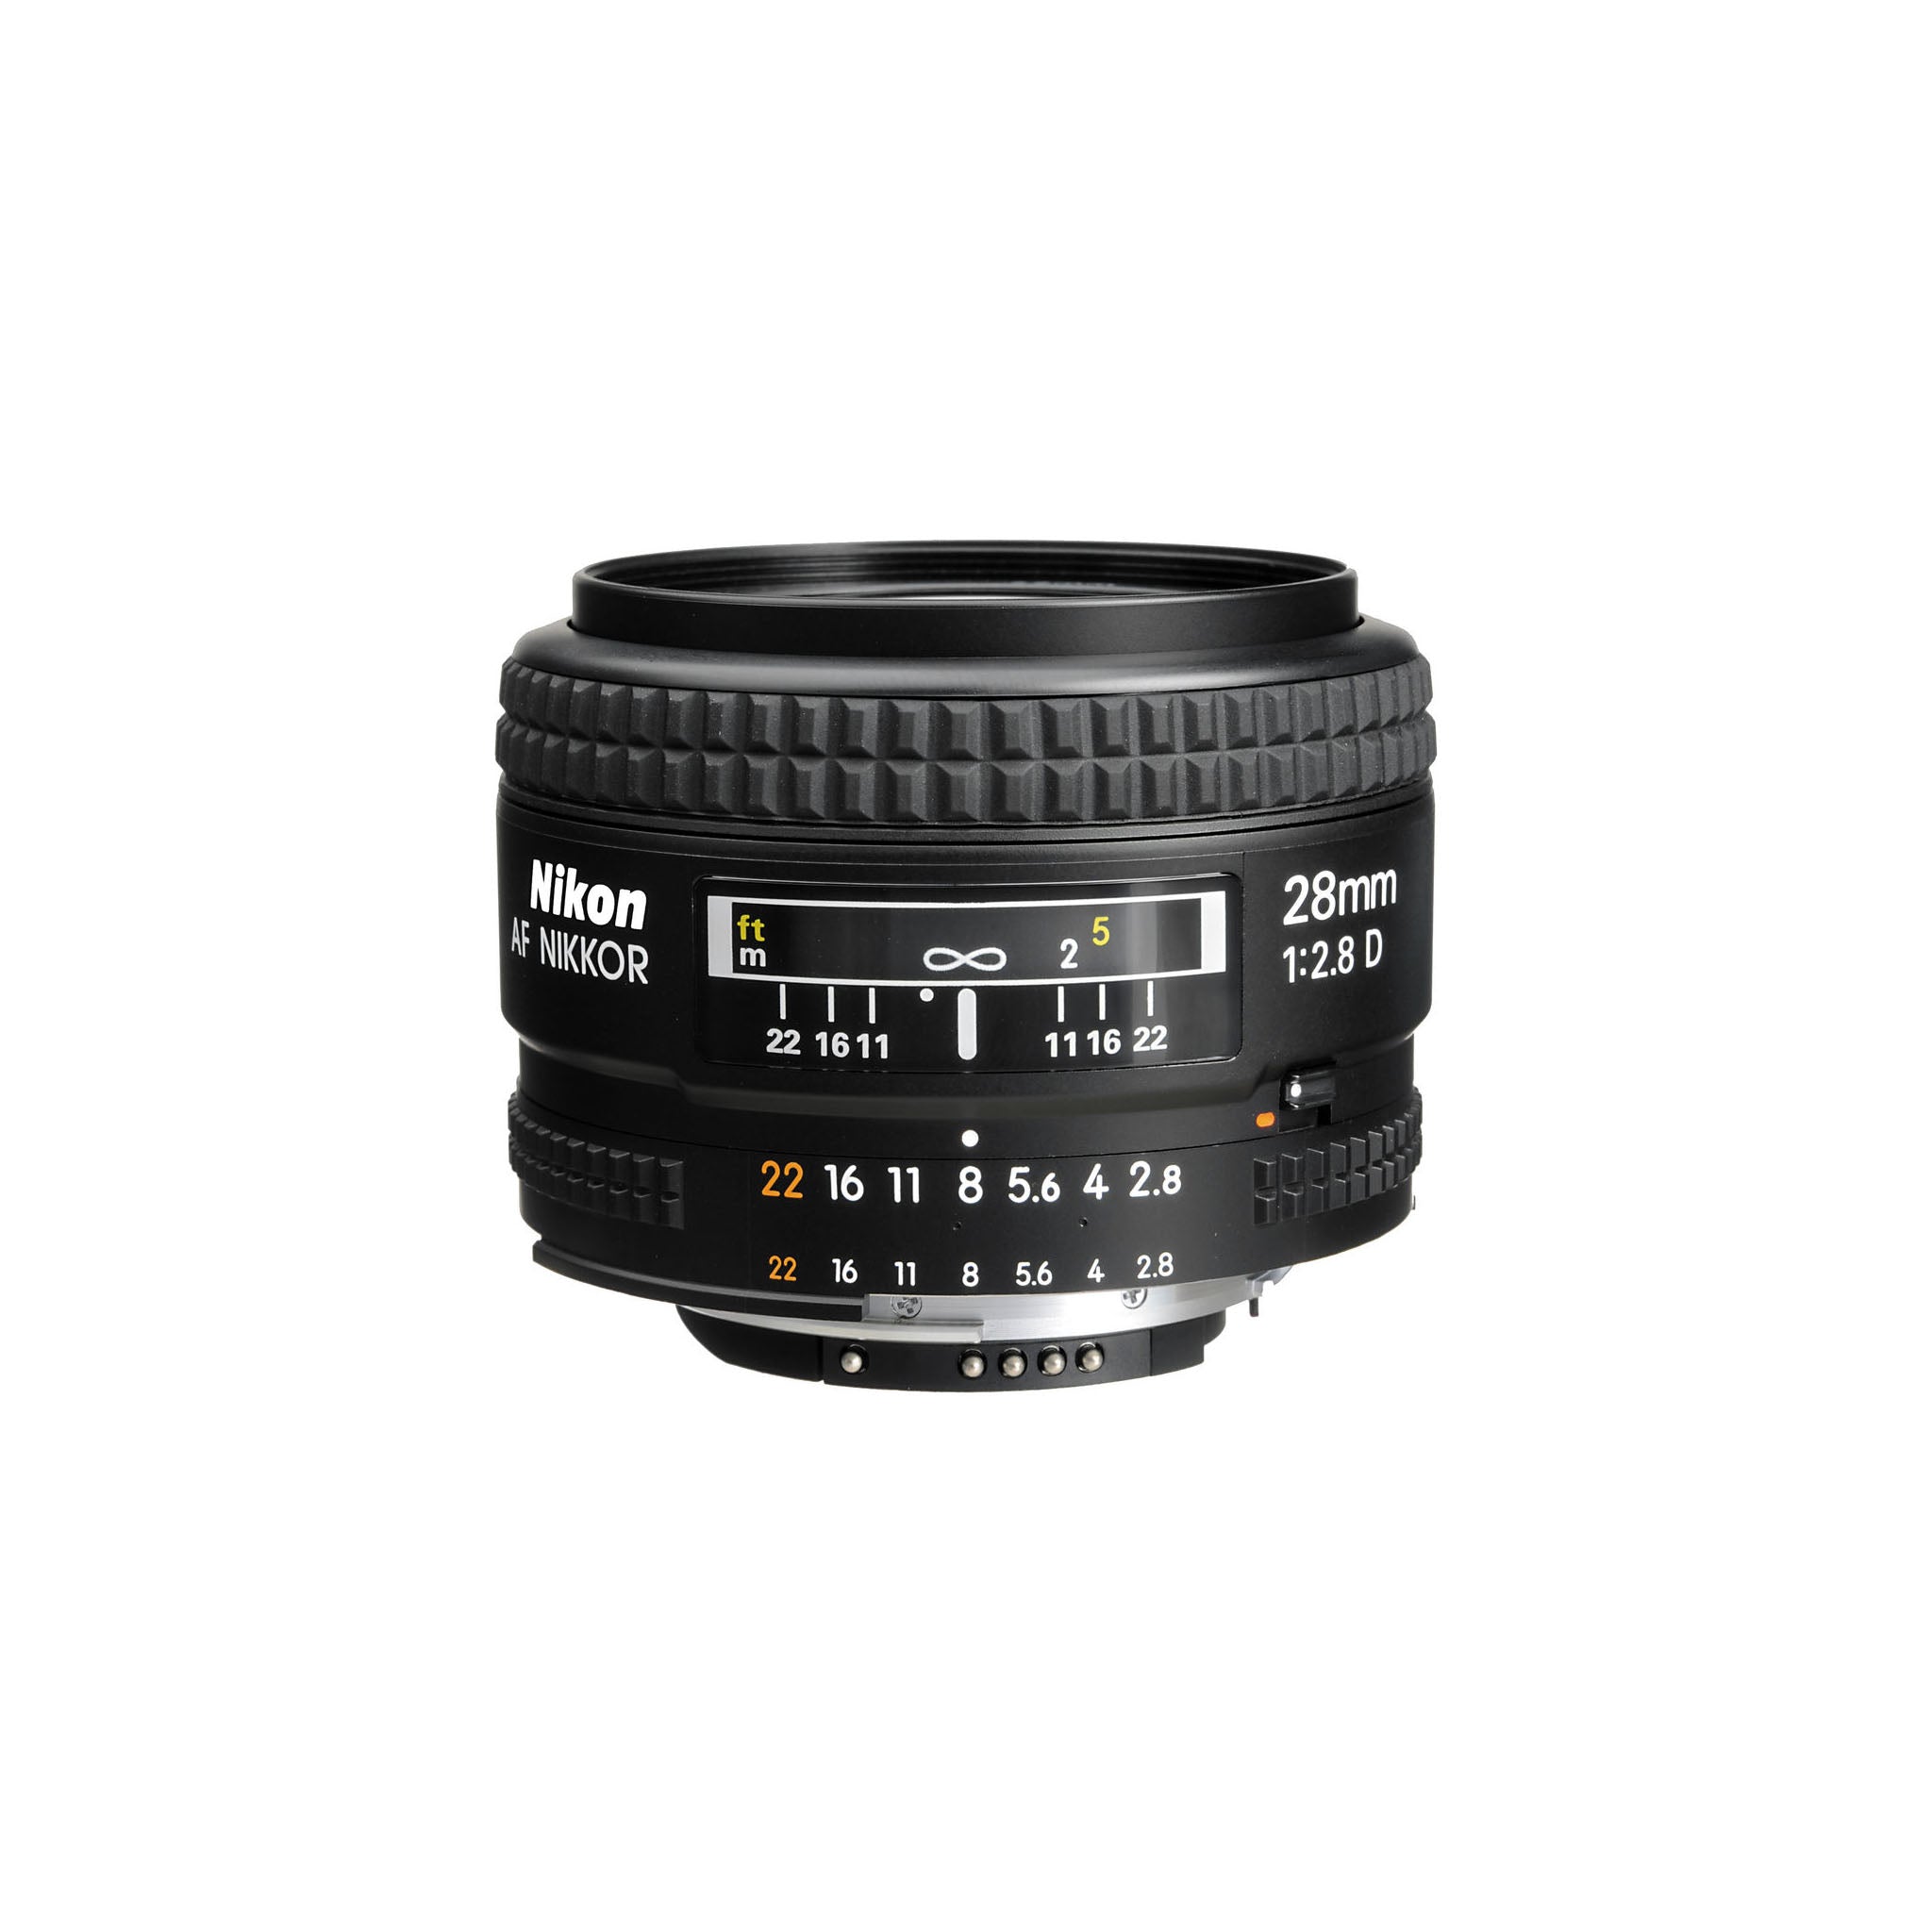 Nikon AF 28mm F2.8D Lens